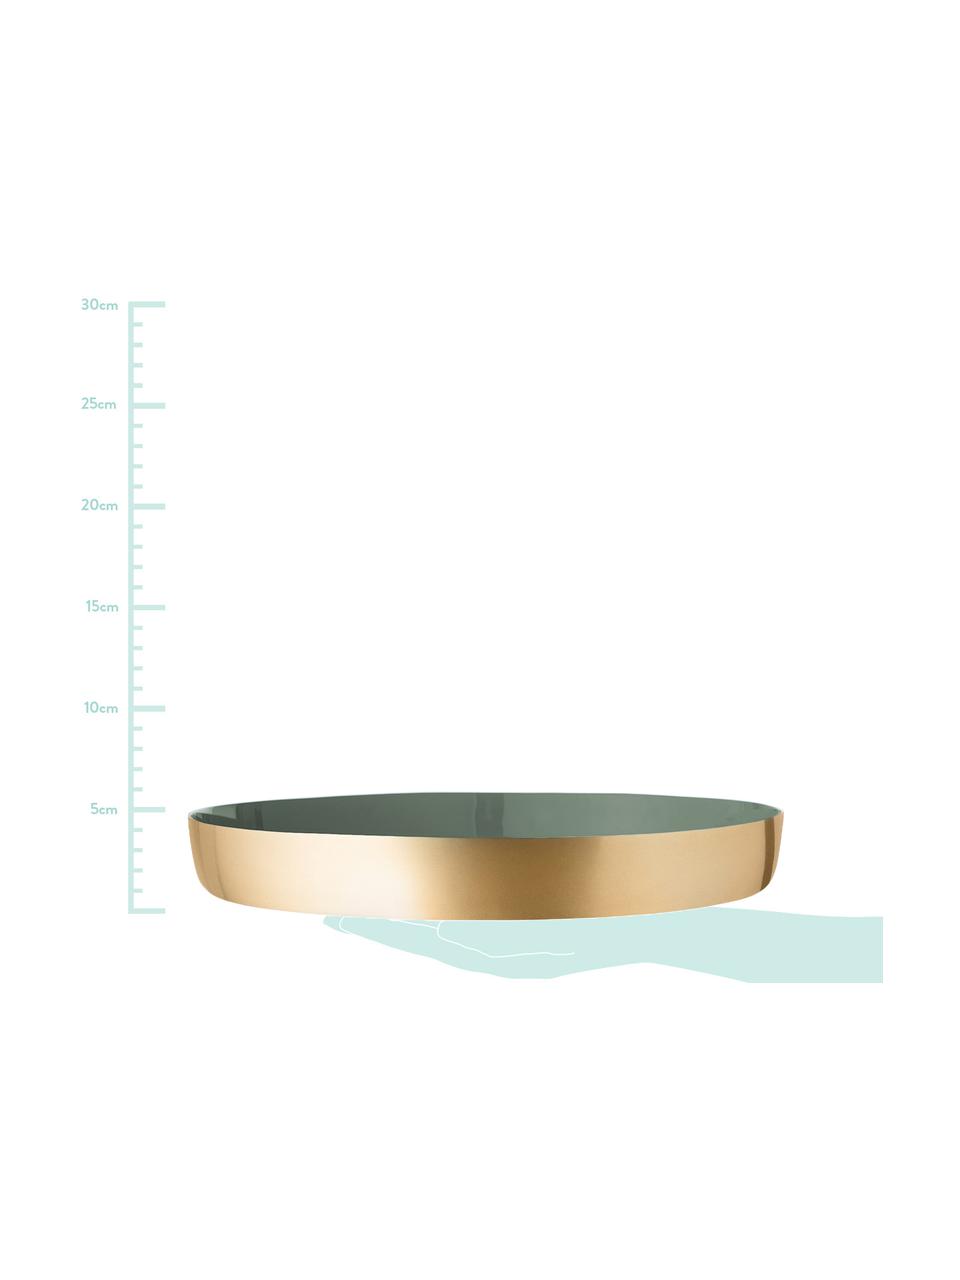 Rundes Deko-Tablett Clara in Gold/Grün, Aluminum, Innen: Grün<br>Außen: Goldfarben, Ø 30 x H 4 cm